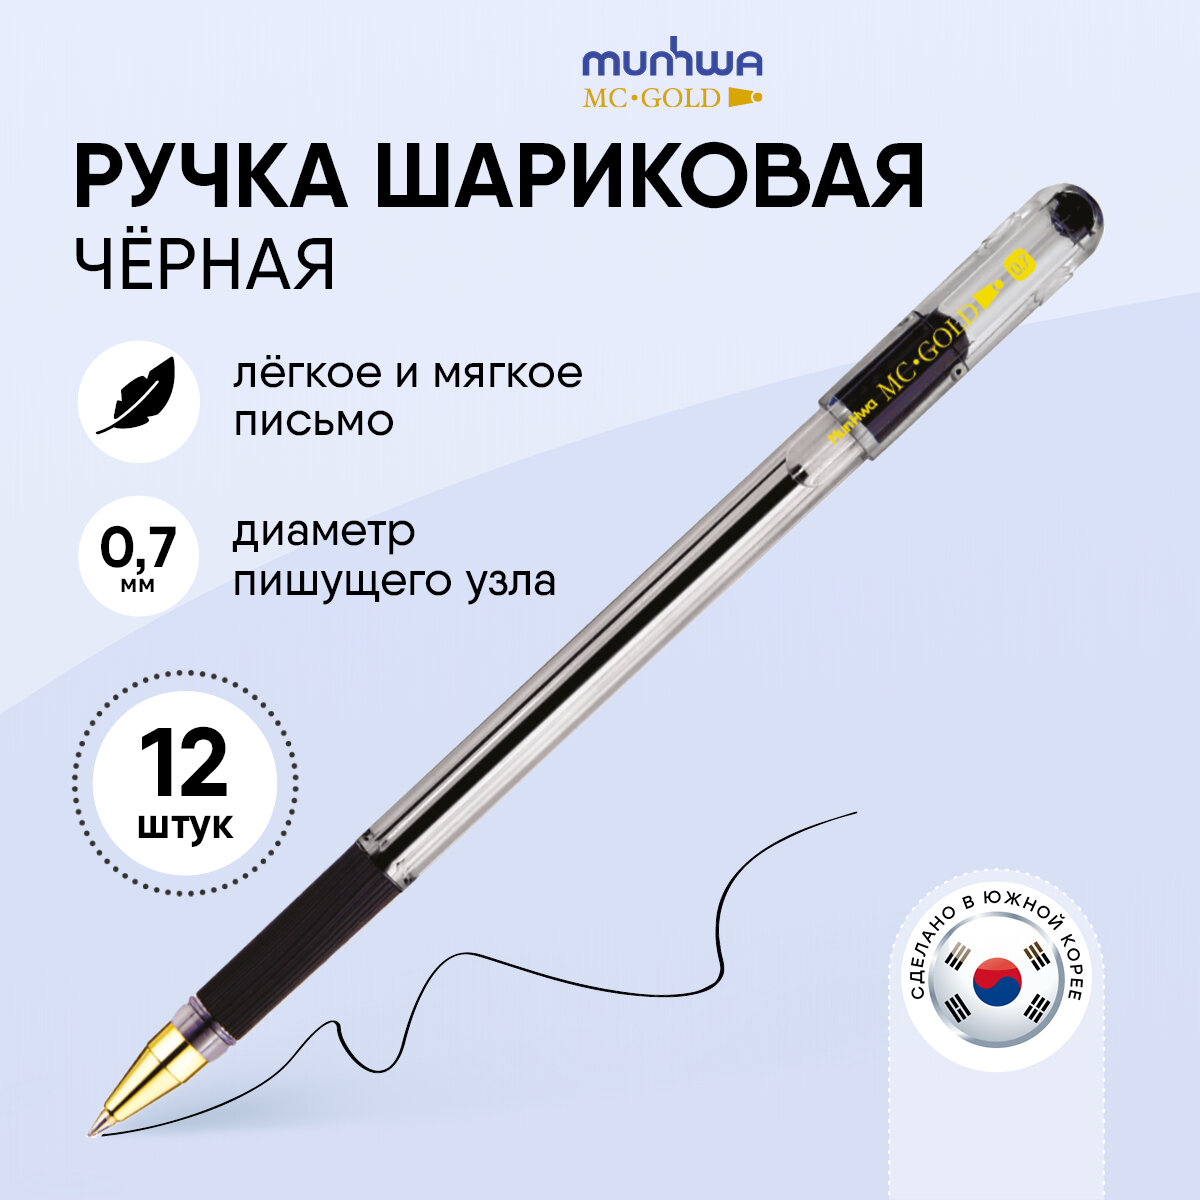 Ручки шариковые черные набор для школы 12 штук/ выгодный комплект MunHwa "MC Gold"шестигранные, масляные чернила, линия письма 0,5 мм, /канцелярия для офиса